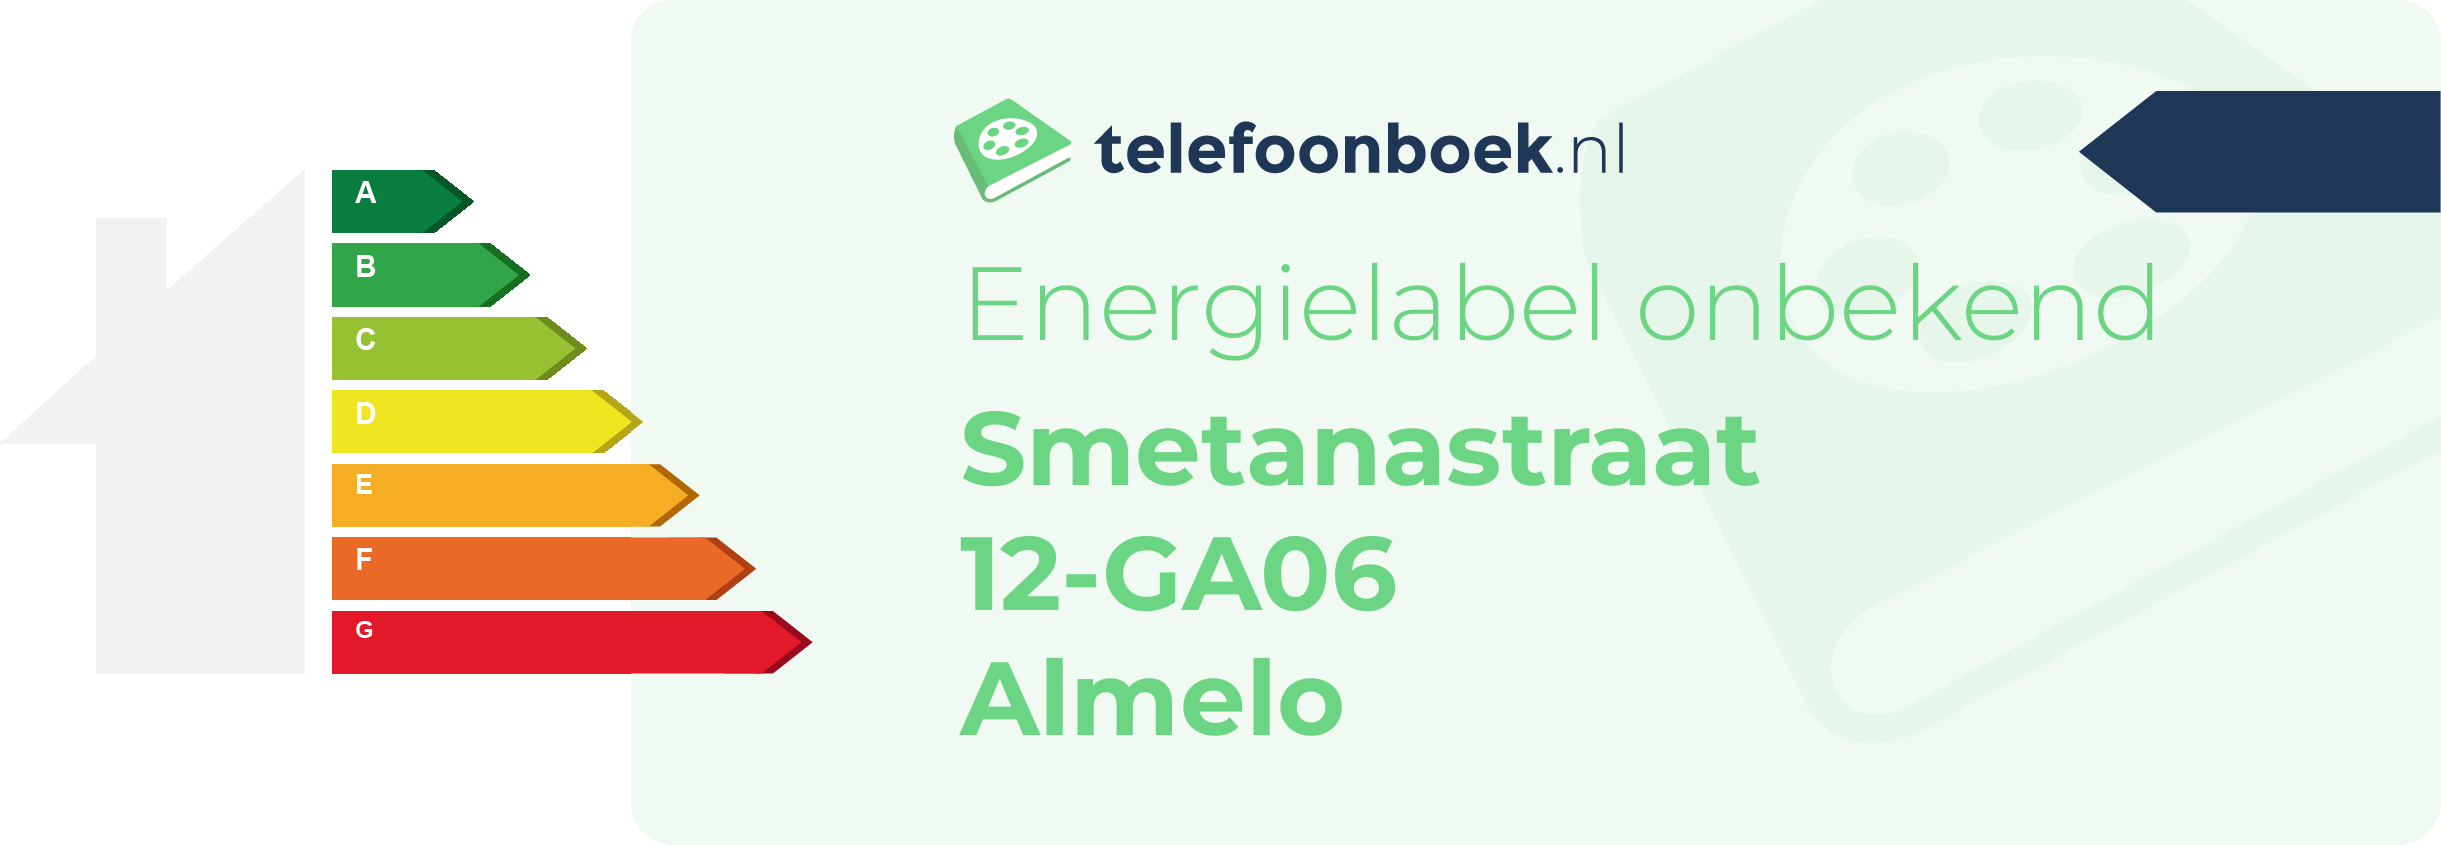 Energielabel Smetanastraat 12-GA06 Almelo